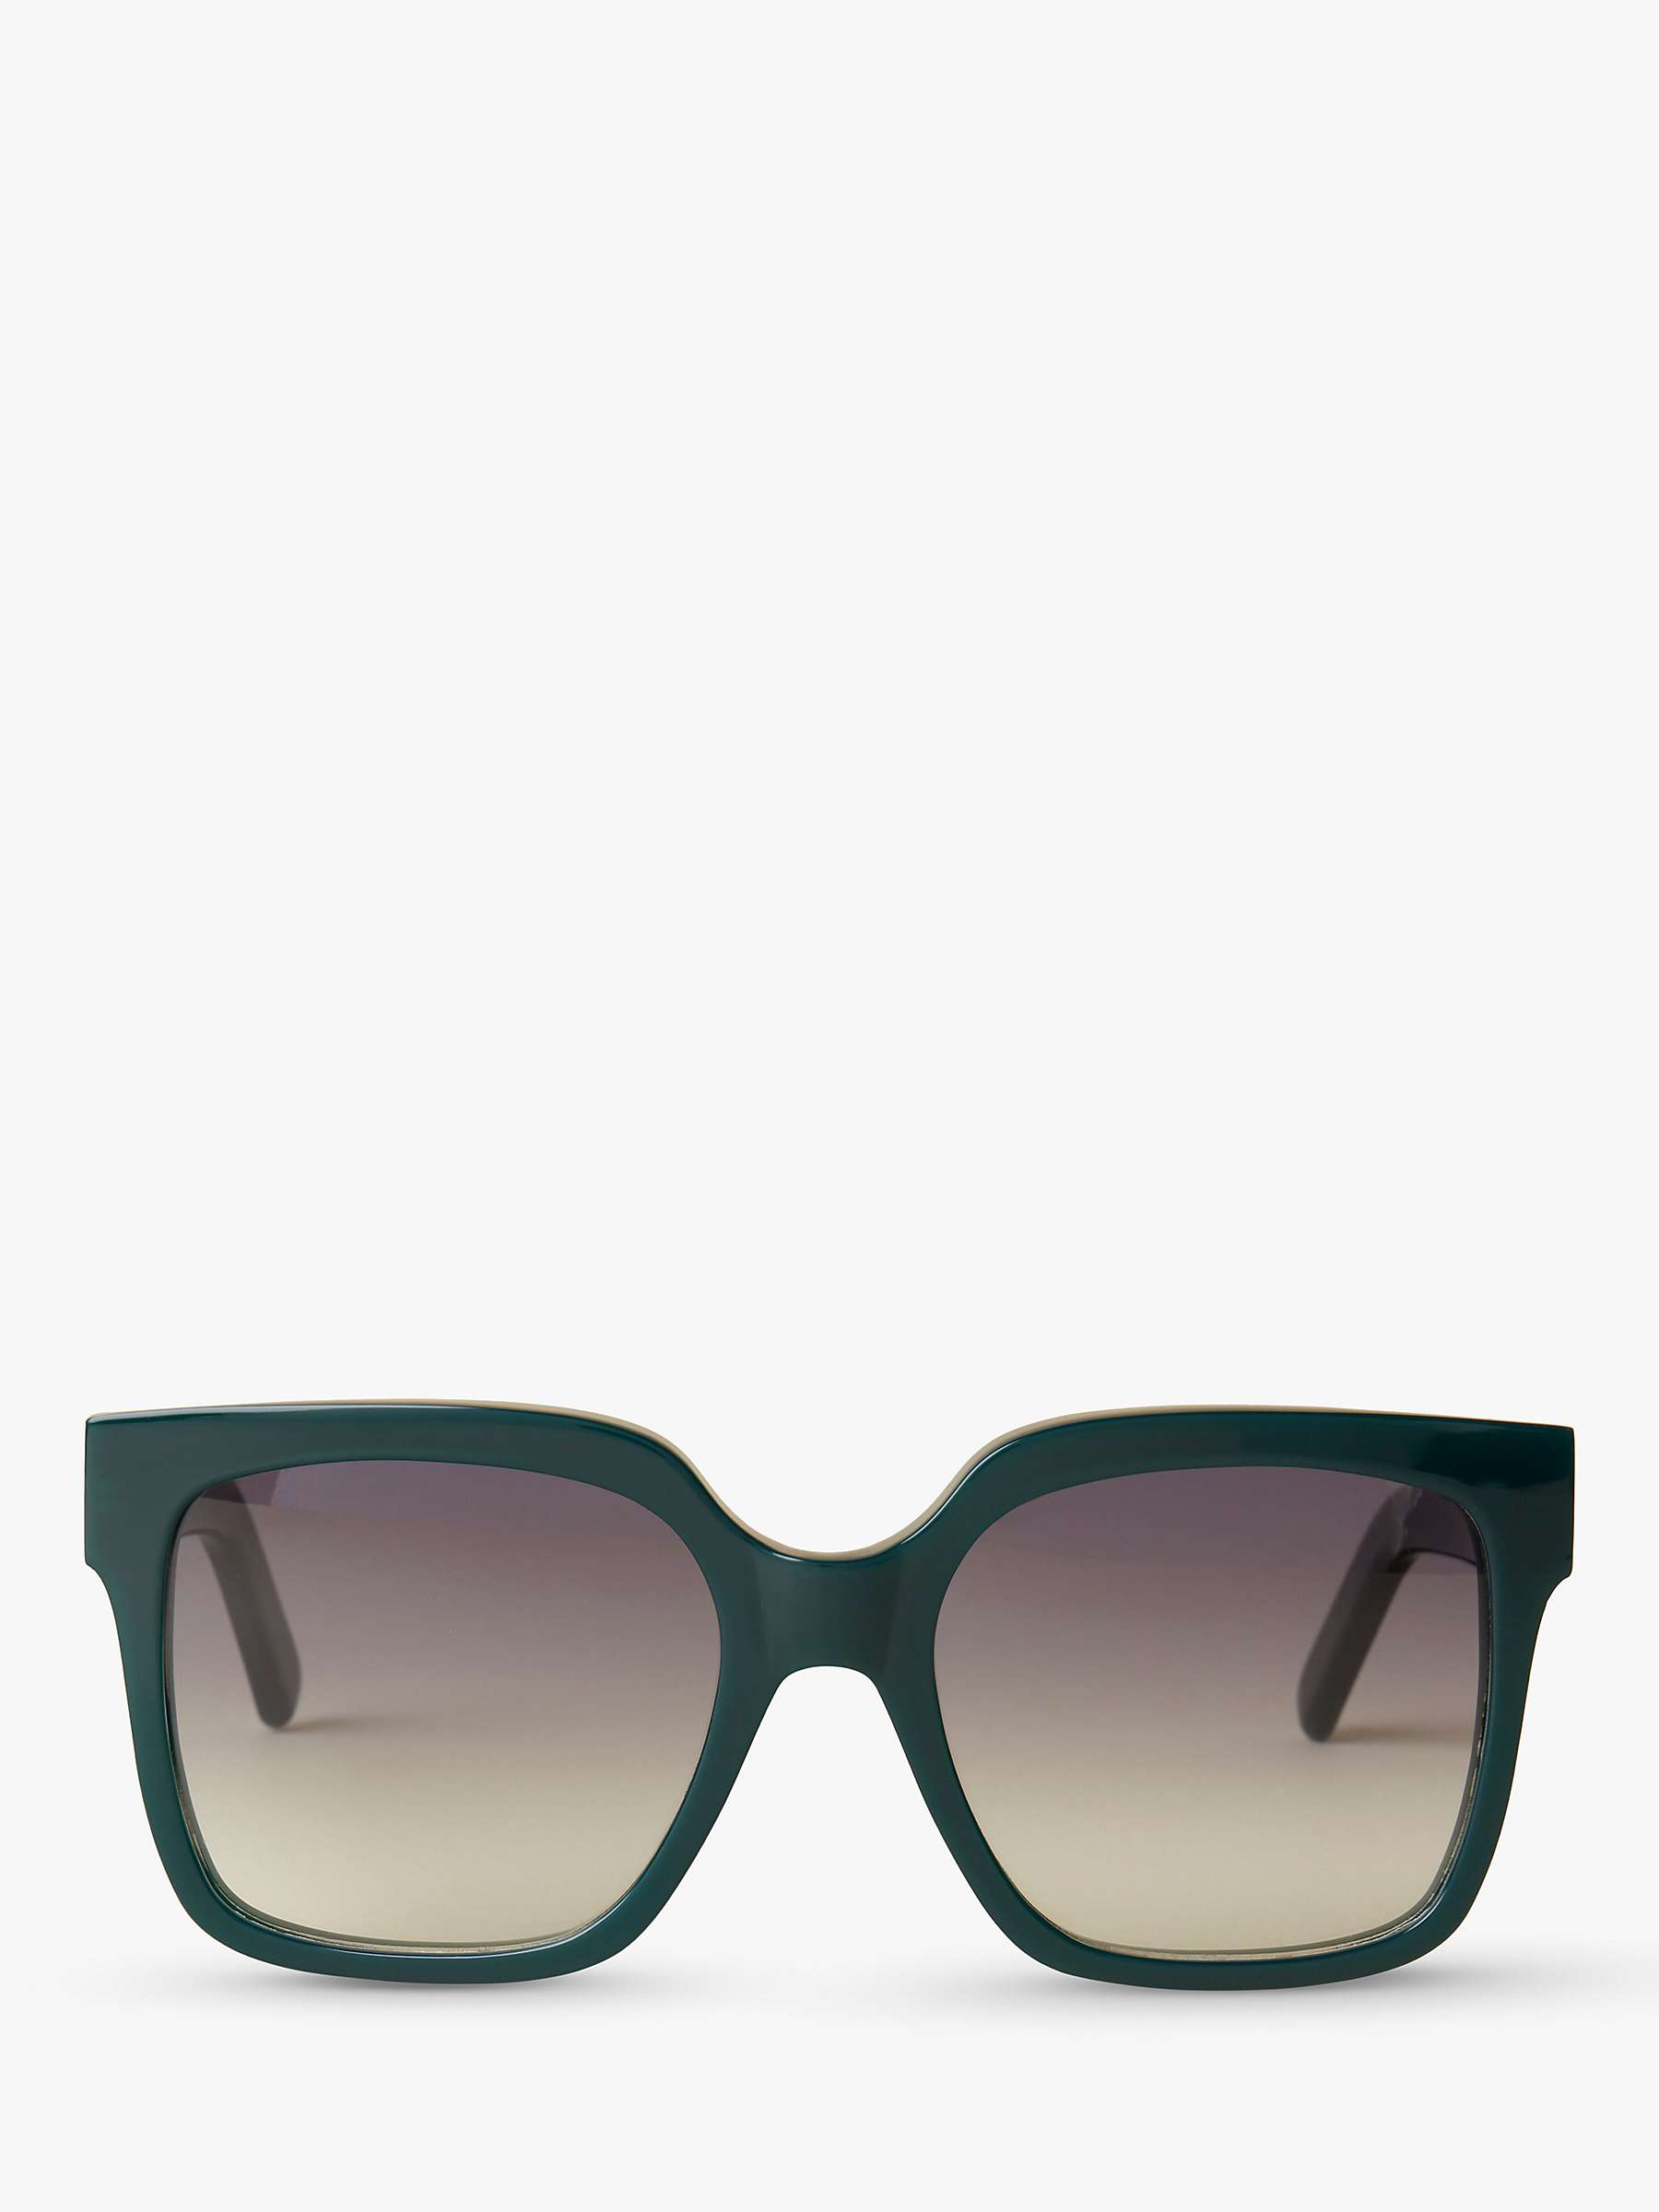 Buy Mulberry Women's Portobello D-Frame Sunglasses Online at johnlewis.com